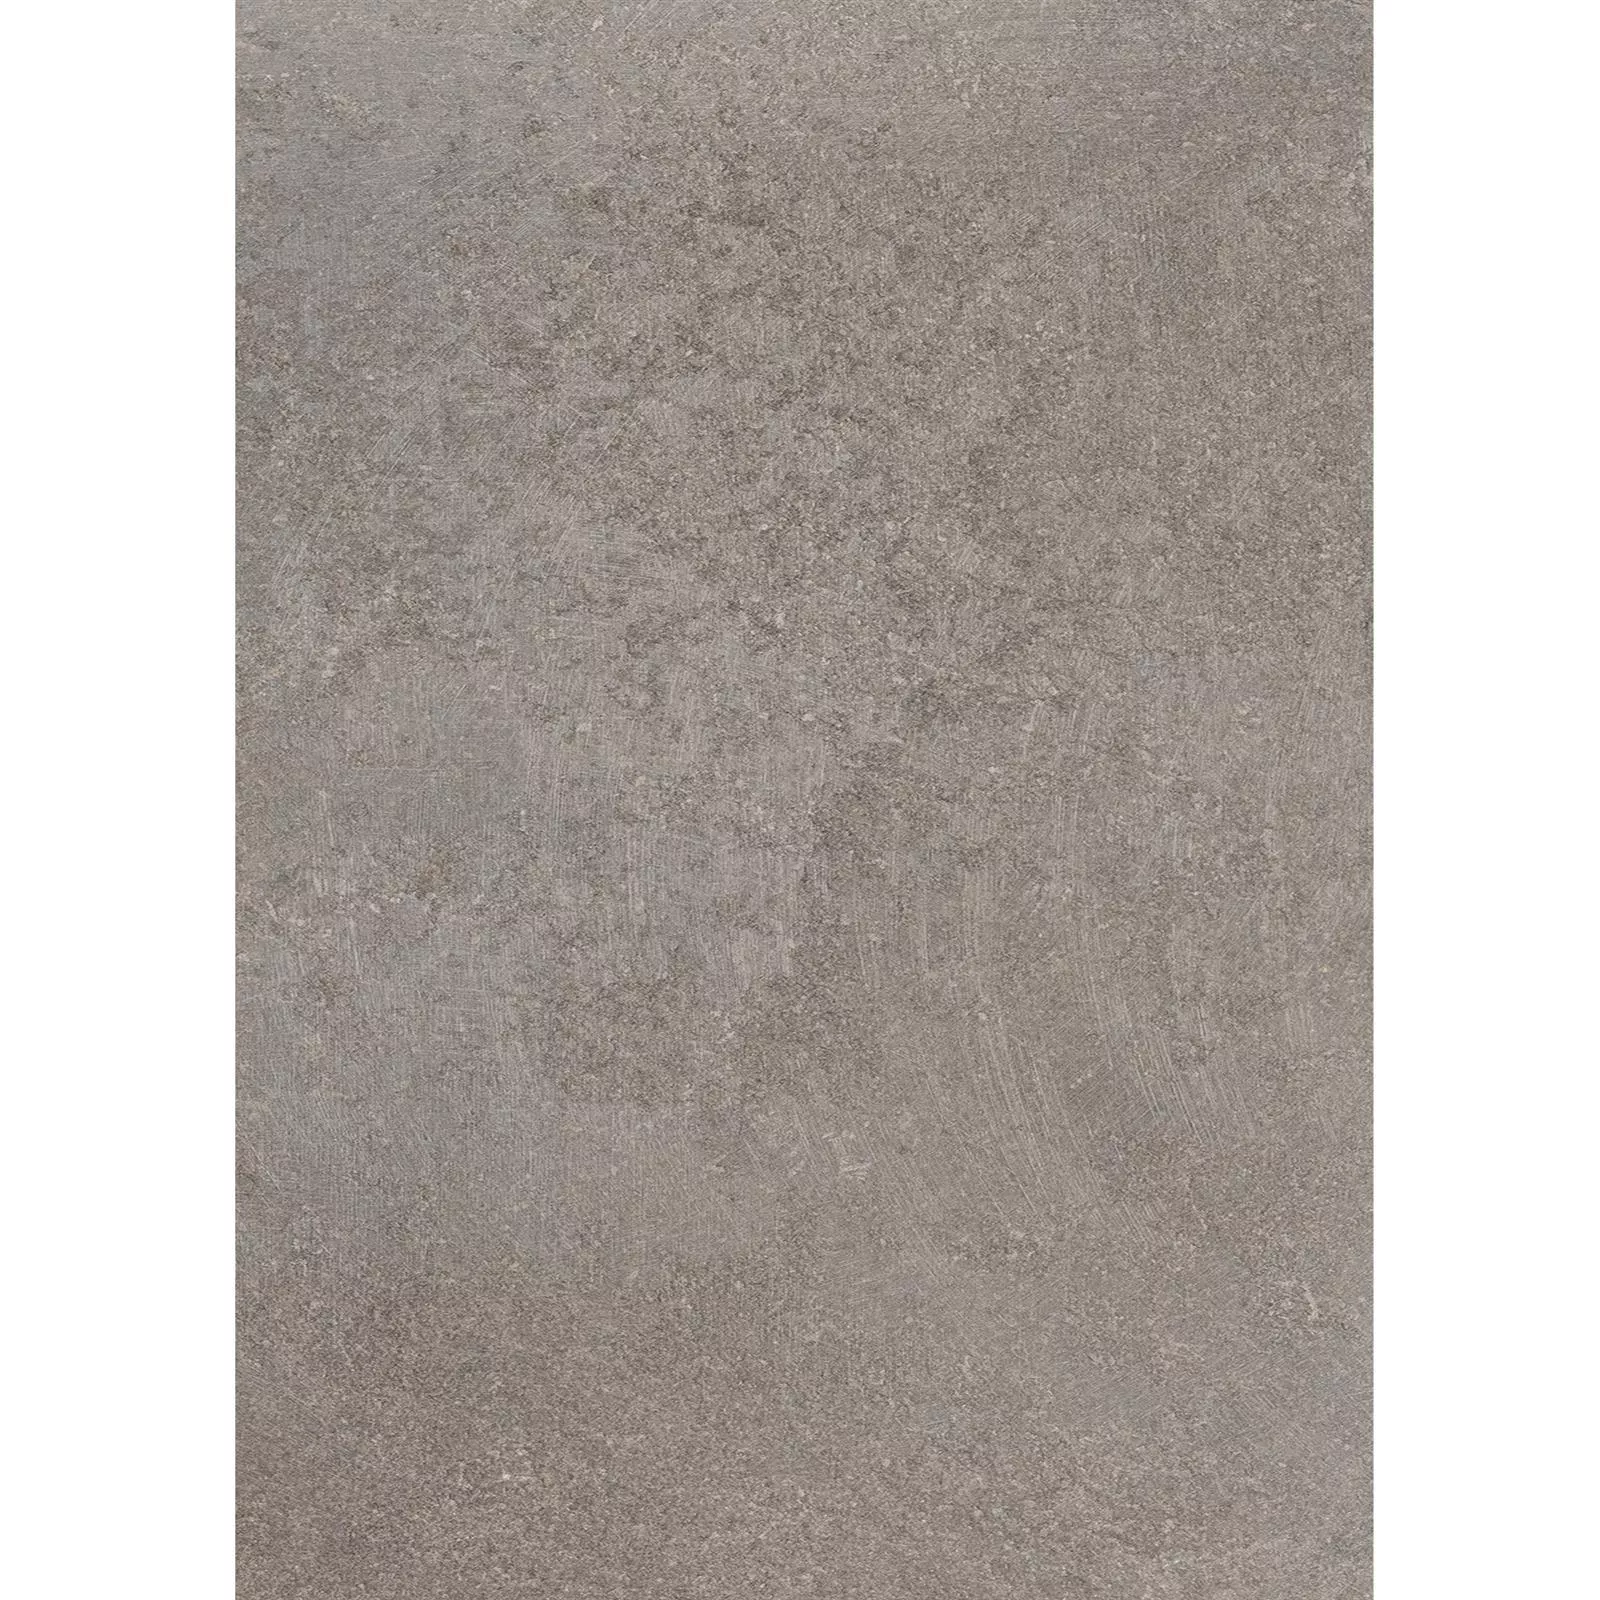 Ladrilhos Olhar de Pedra Horizon Marrom 60x120cm